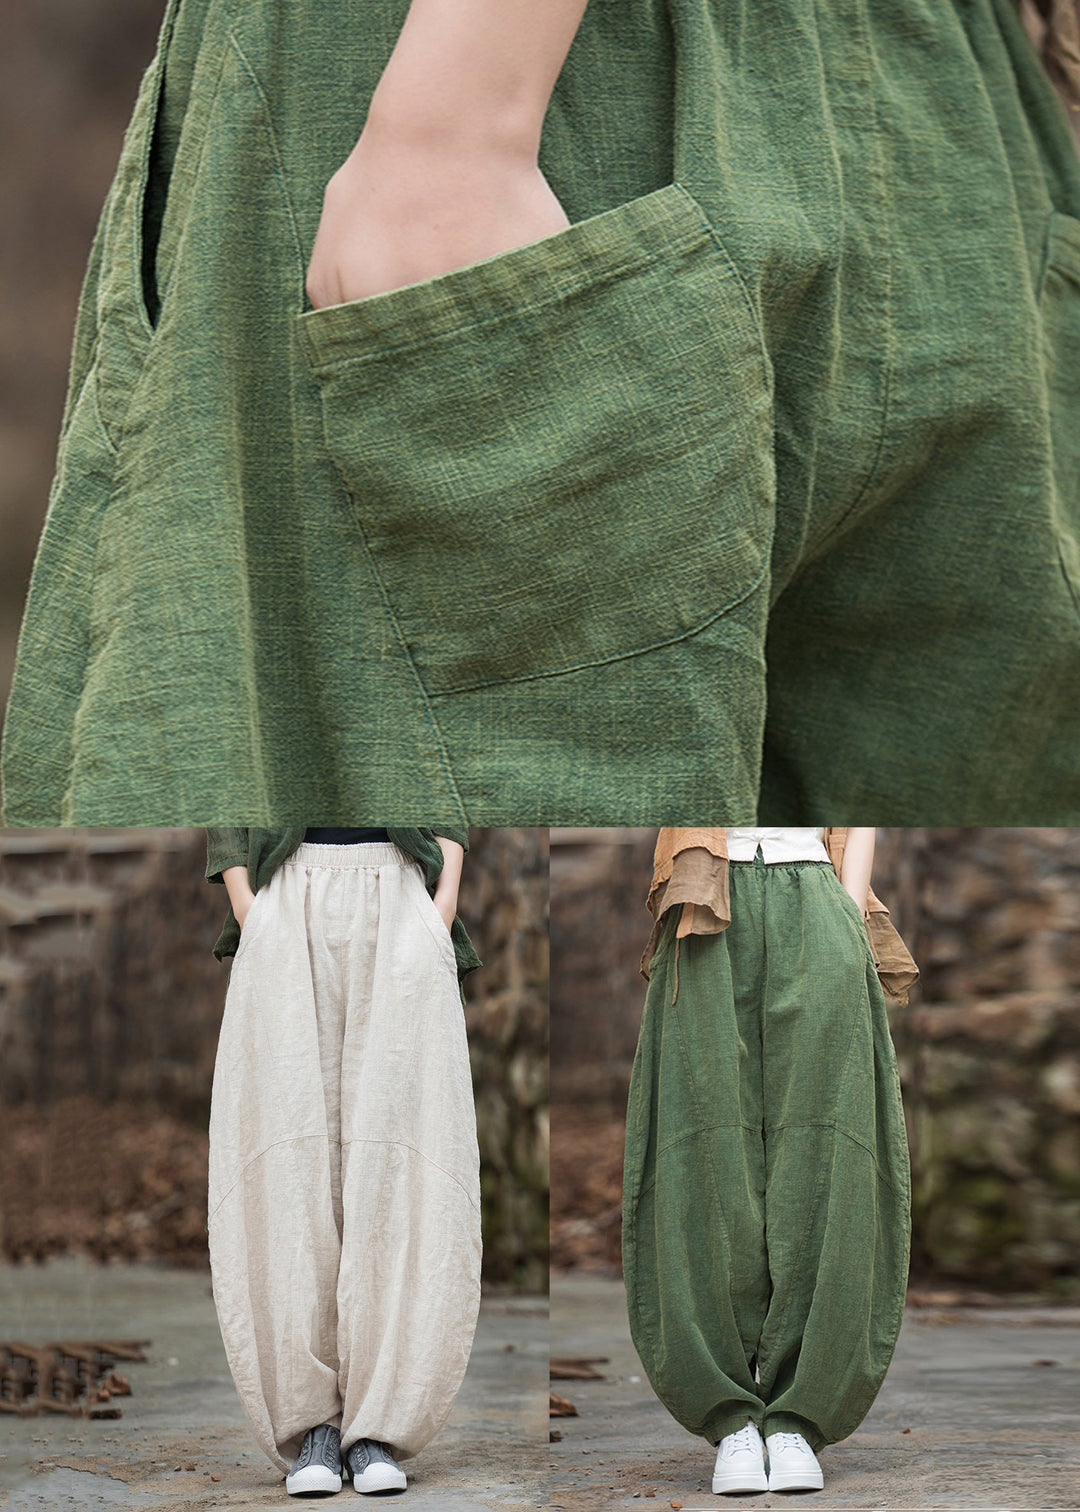 Women Green Pockets Elastic Waist Patchwork Linen Pants Fall